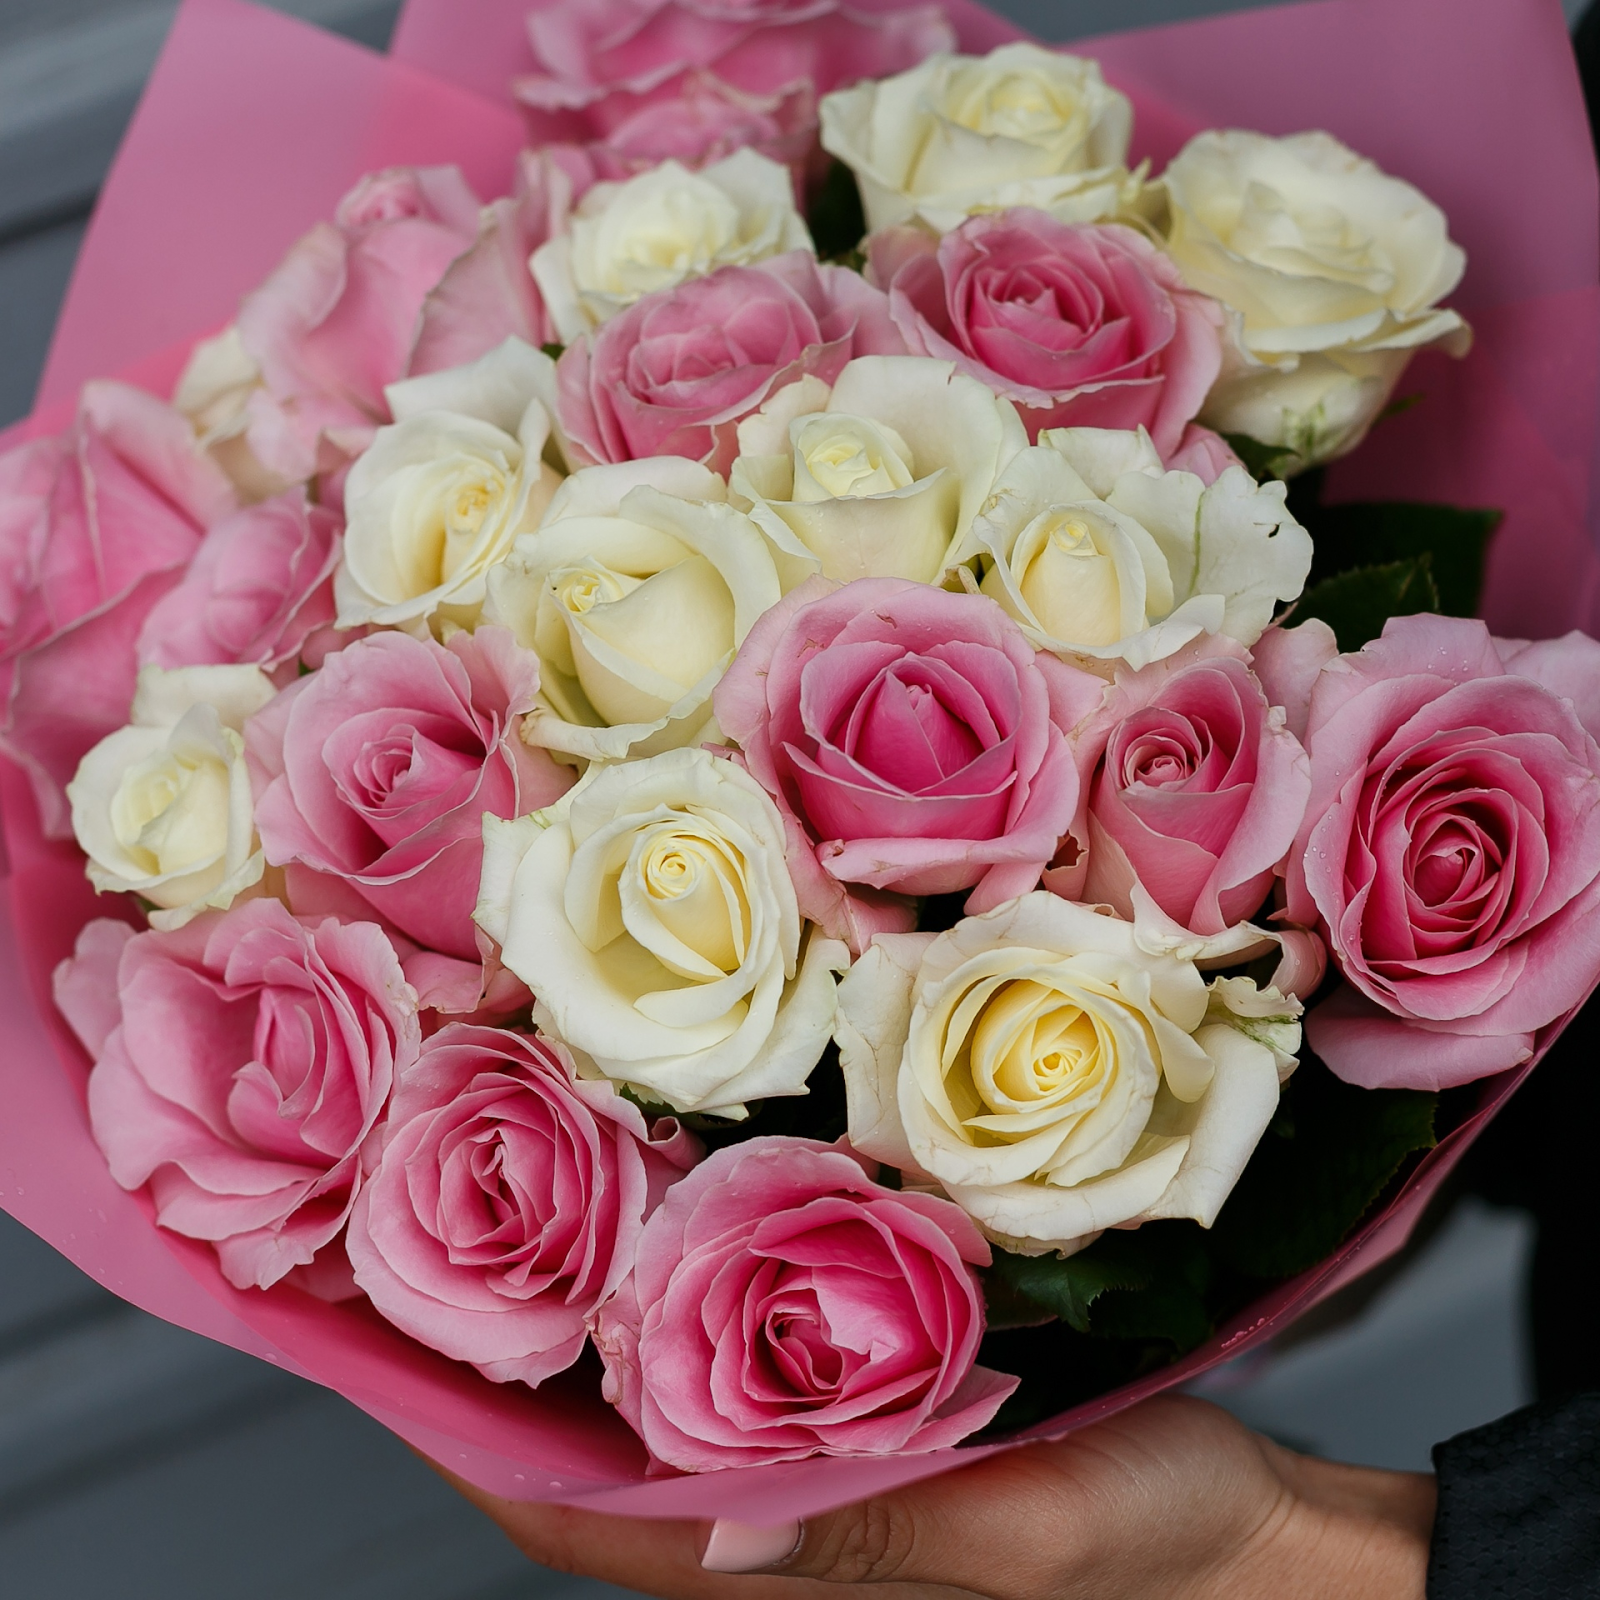 Розы белые с розовыми розами доставка цветов псков круглосуточно недорого